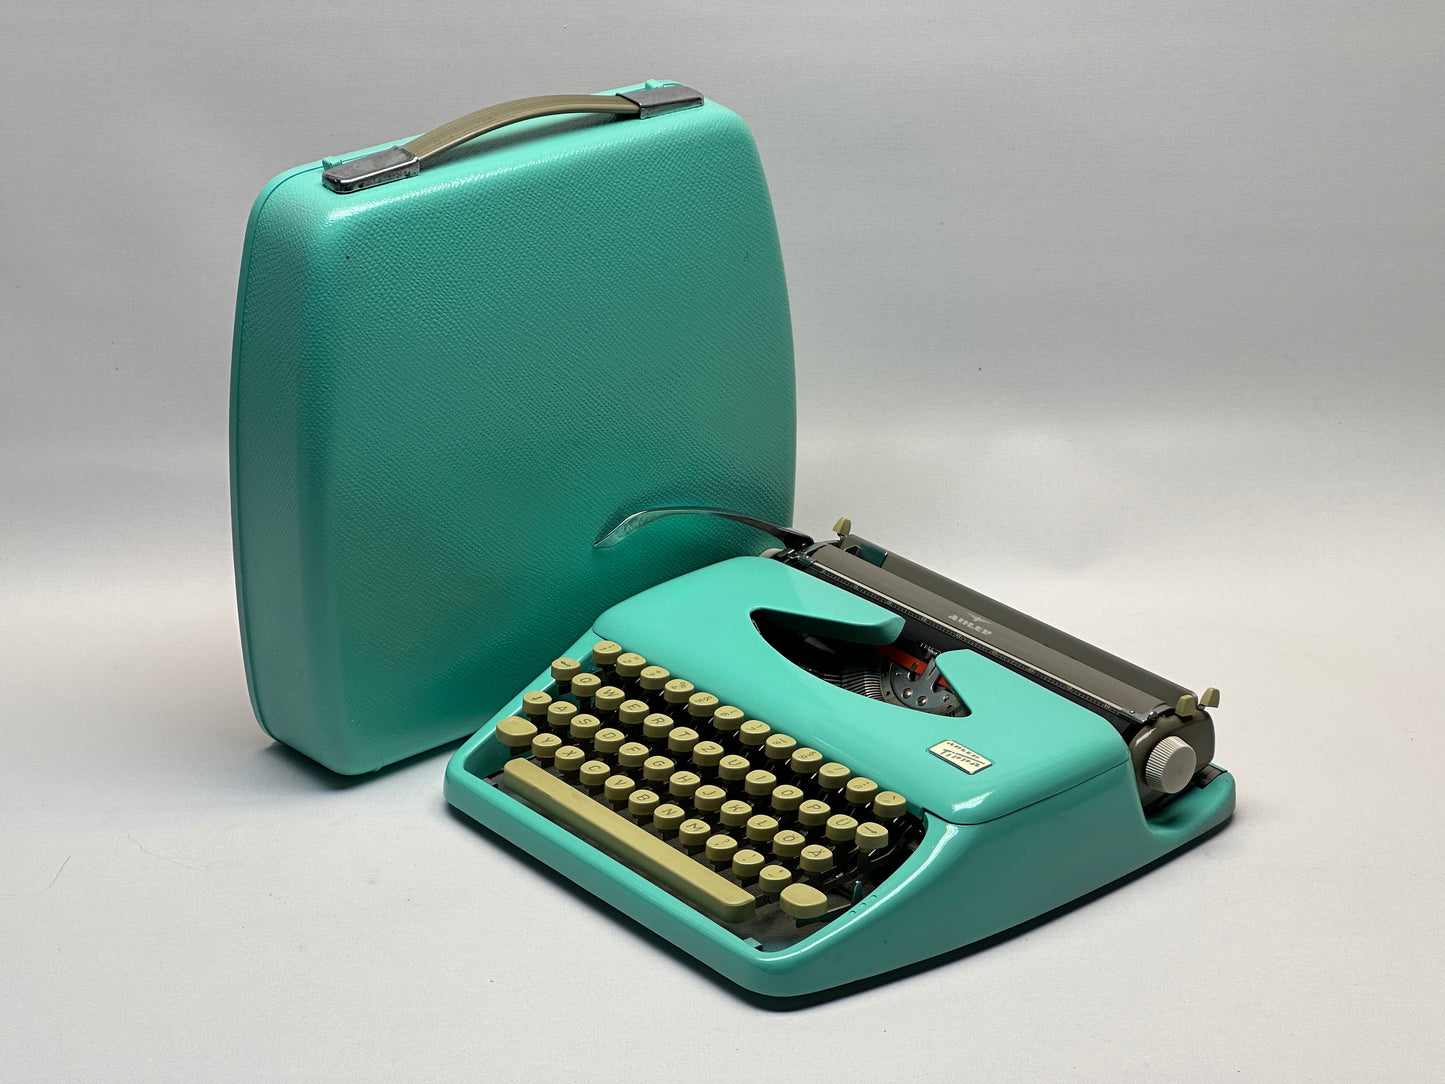 Adler Tippa Typewriter - QWERTZ Keyboard, Cream Keys - Antituq Typewriter - Turquoise Typewrtiter